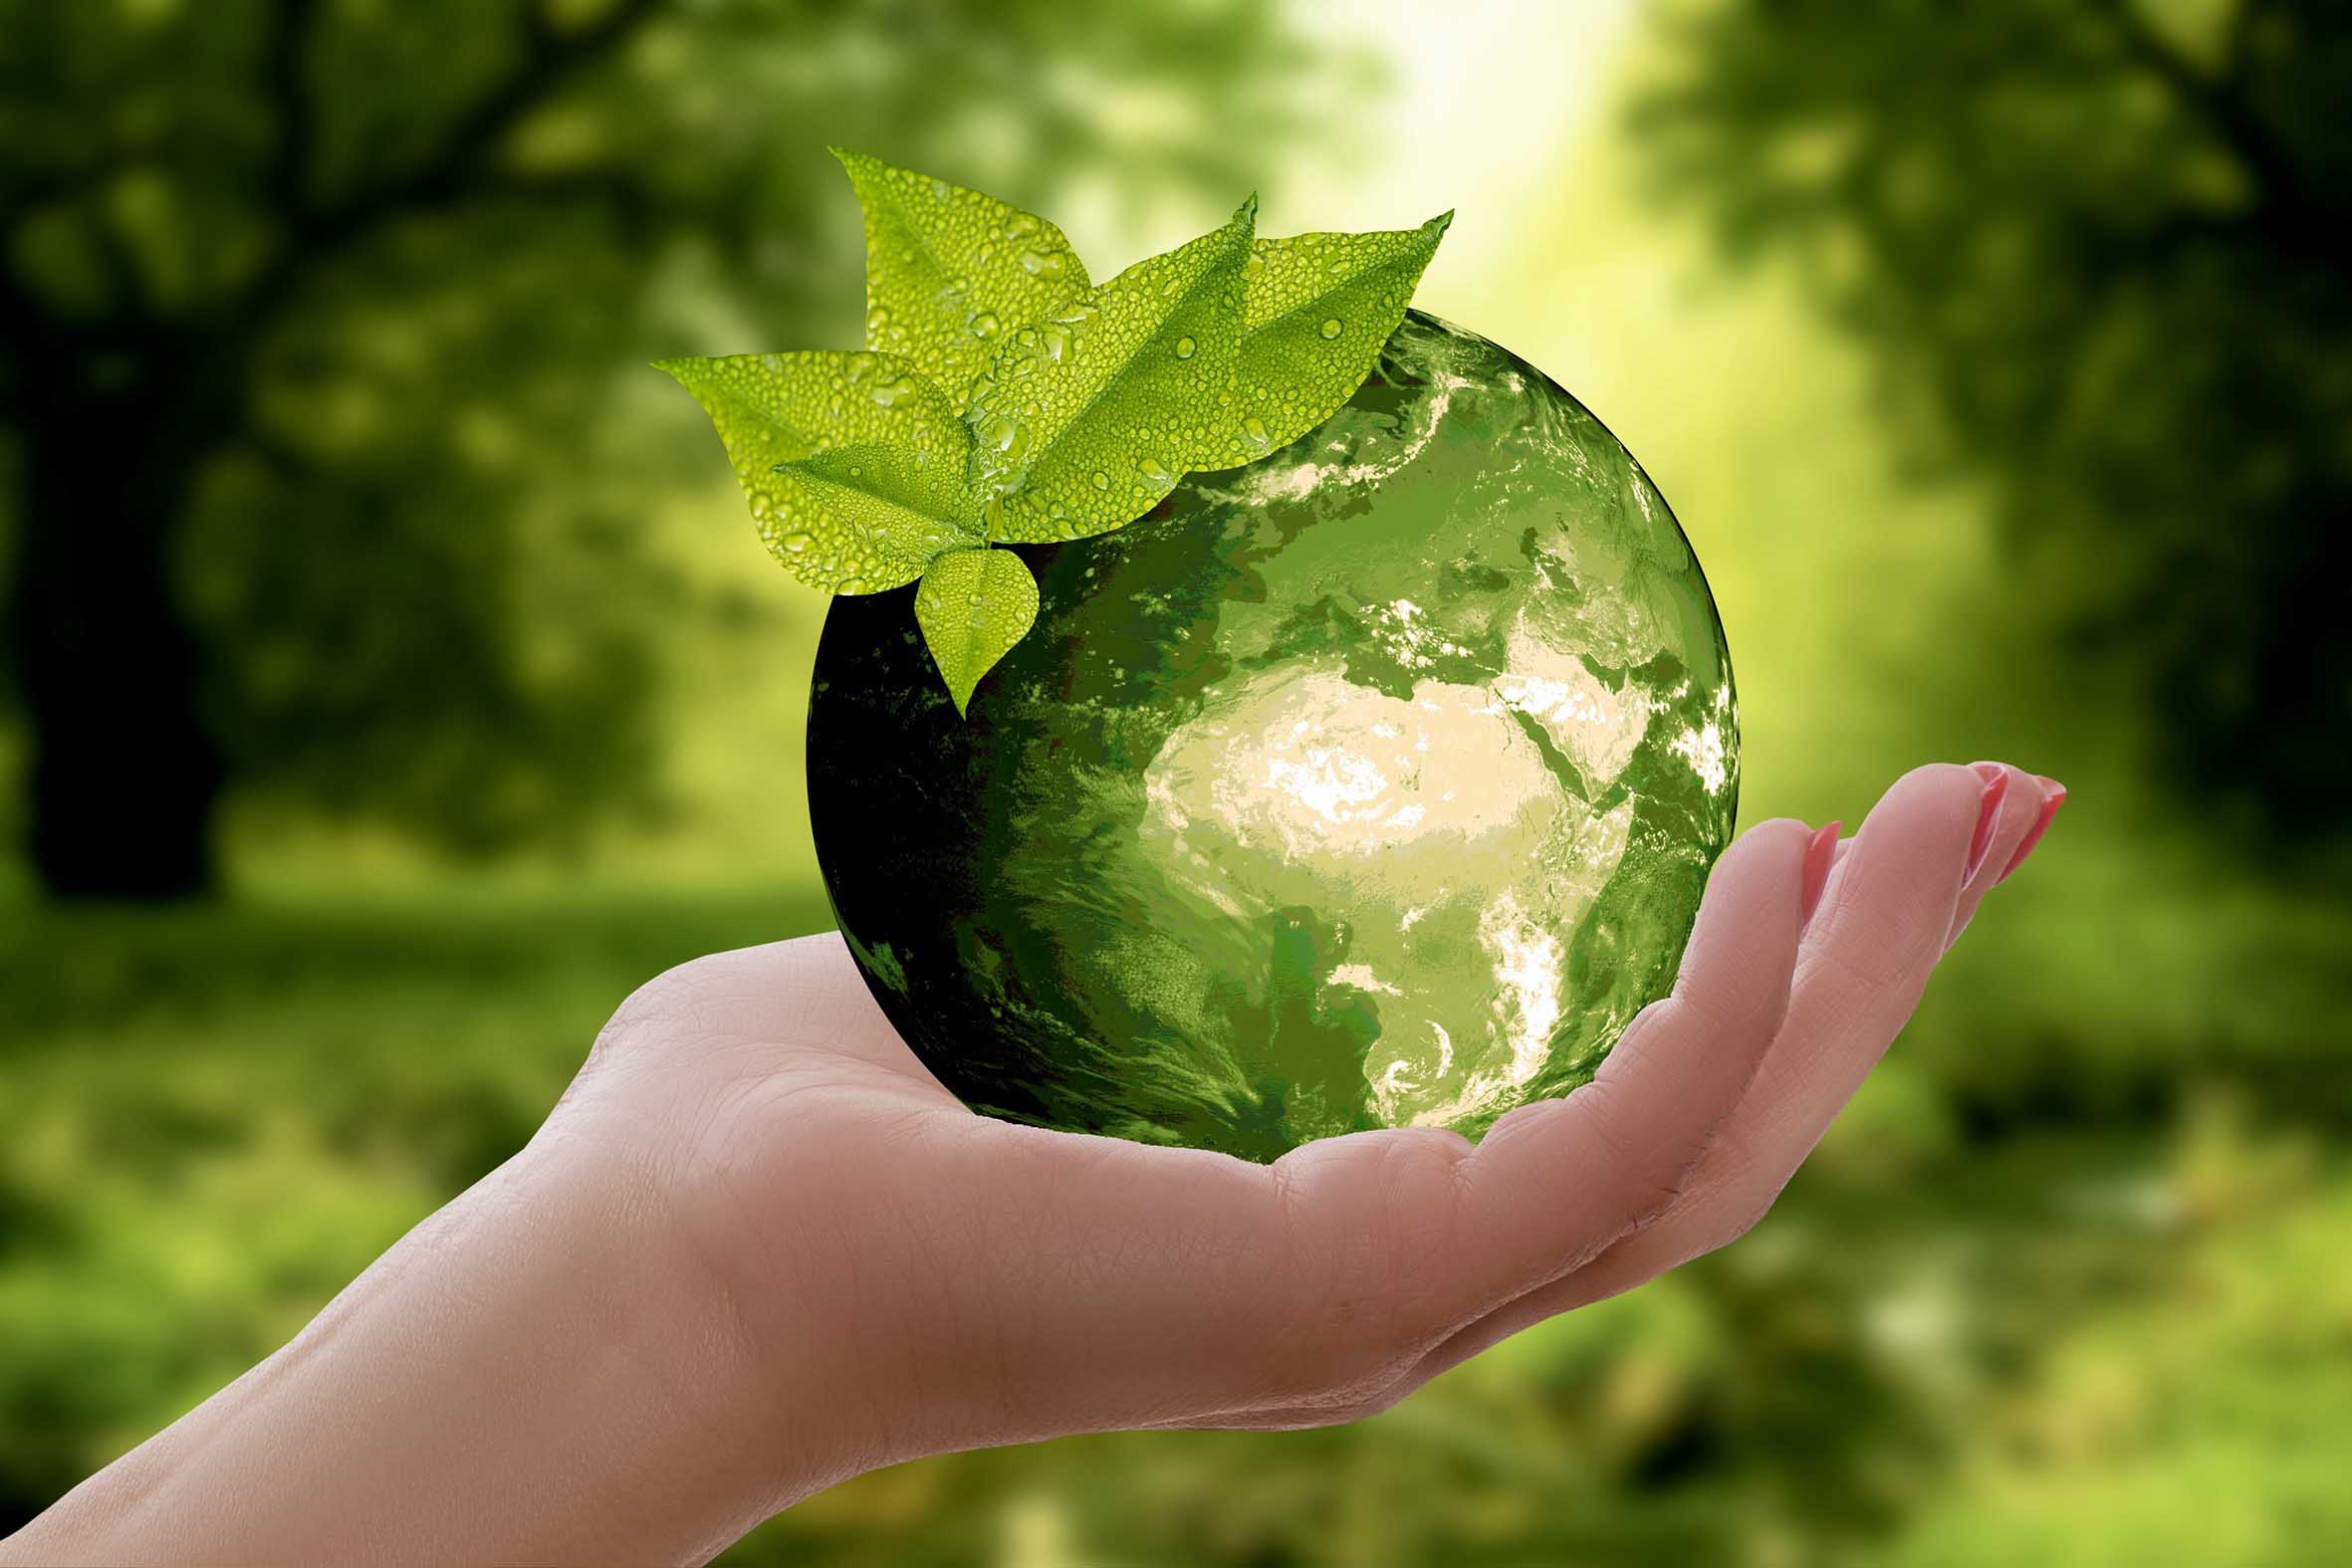 Ecosostenibilità Ecologia Risparmio energetico soluzioni Tutorial eco sostenibili smetti di sprecare ecco i modi di usare il web che aiutano l’ambiente Bioedilizia Alto risparmio energetico